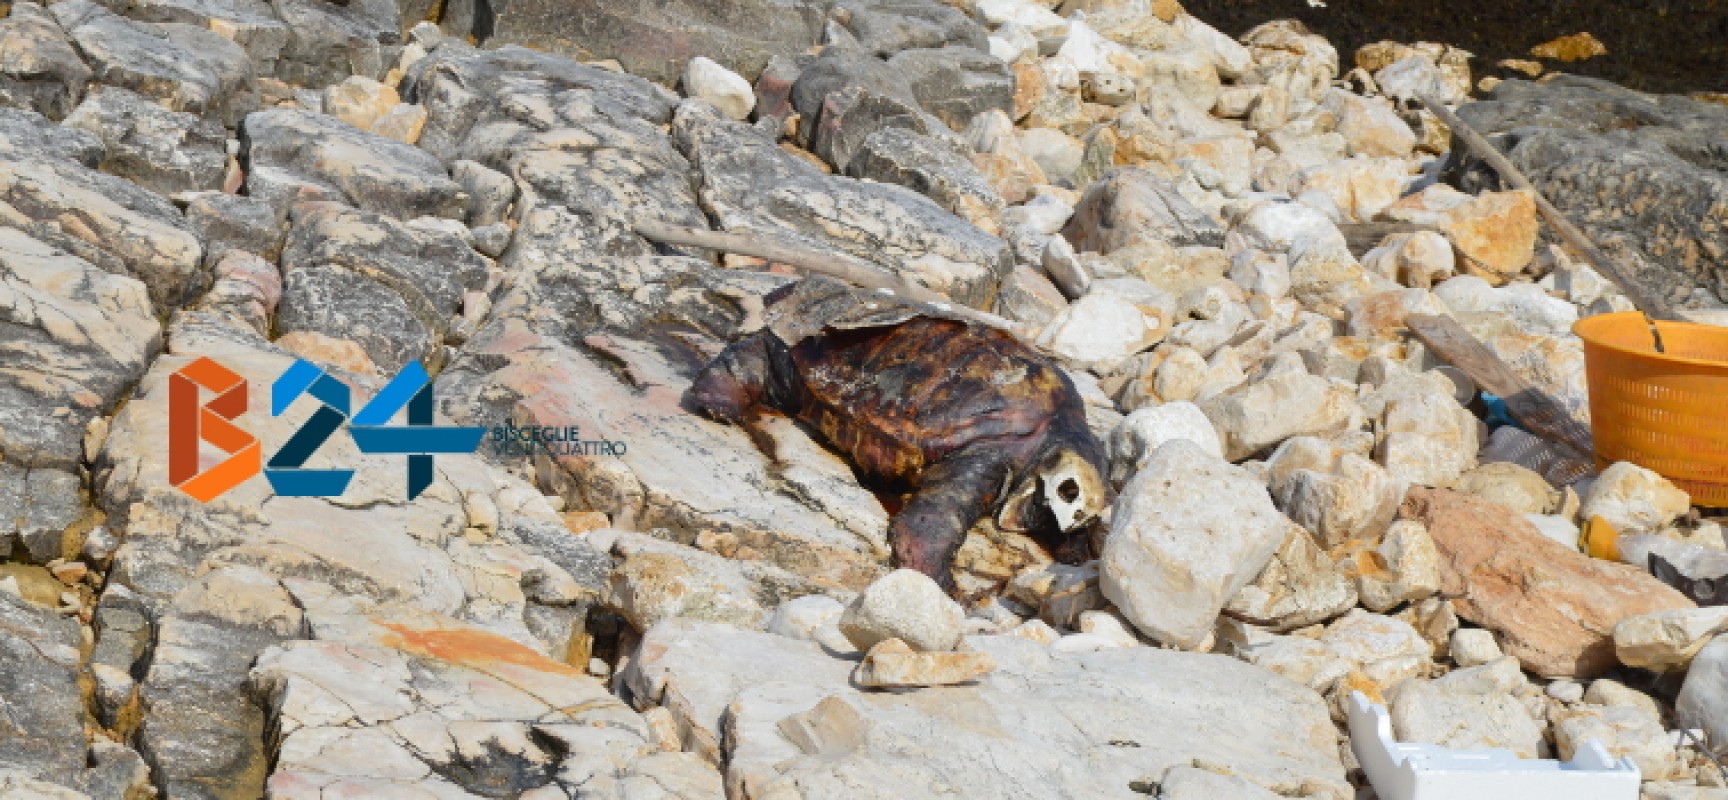 Carcassa di tartaruga spiaggiata da giorni a Ripalta, interviene Centro di Recupero Tartarughe / FOTO